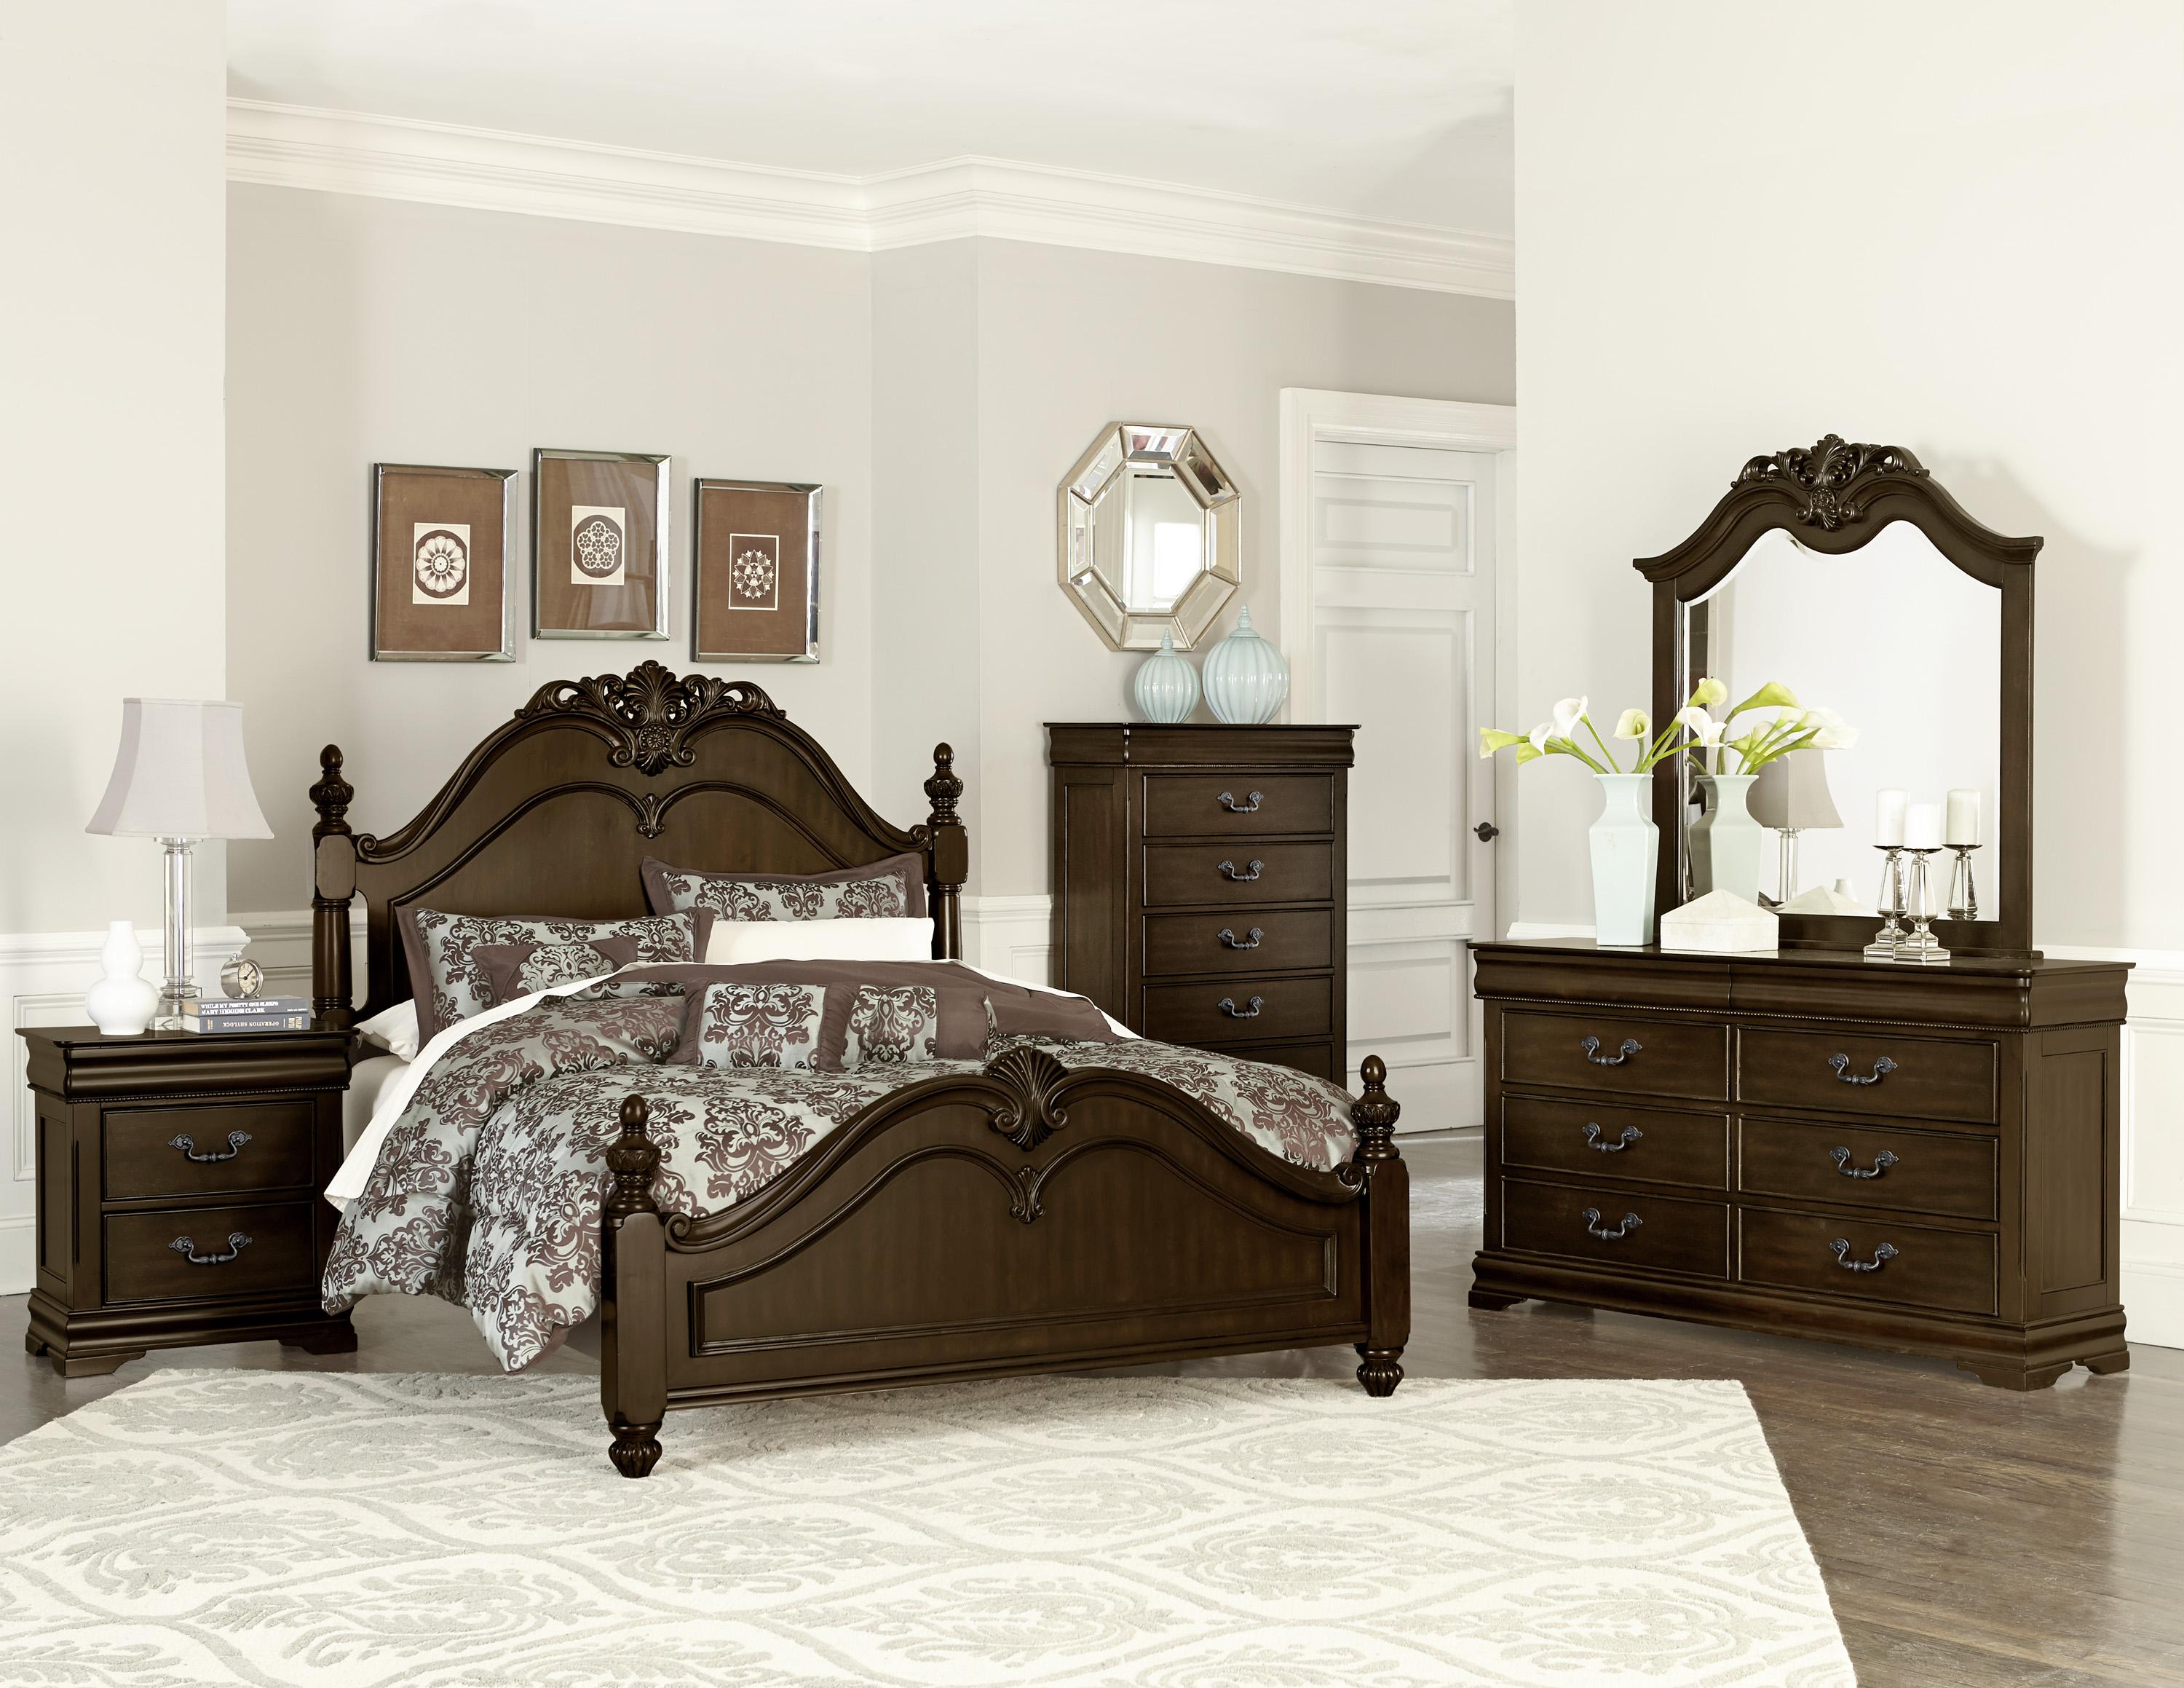 

    
Traditional Dark Cherry Wood Queen Bedroom Set 5pcs Homelegance 1869-1* Mont Belvieu
